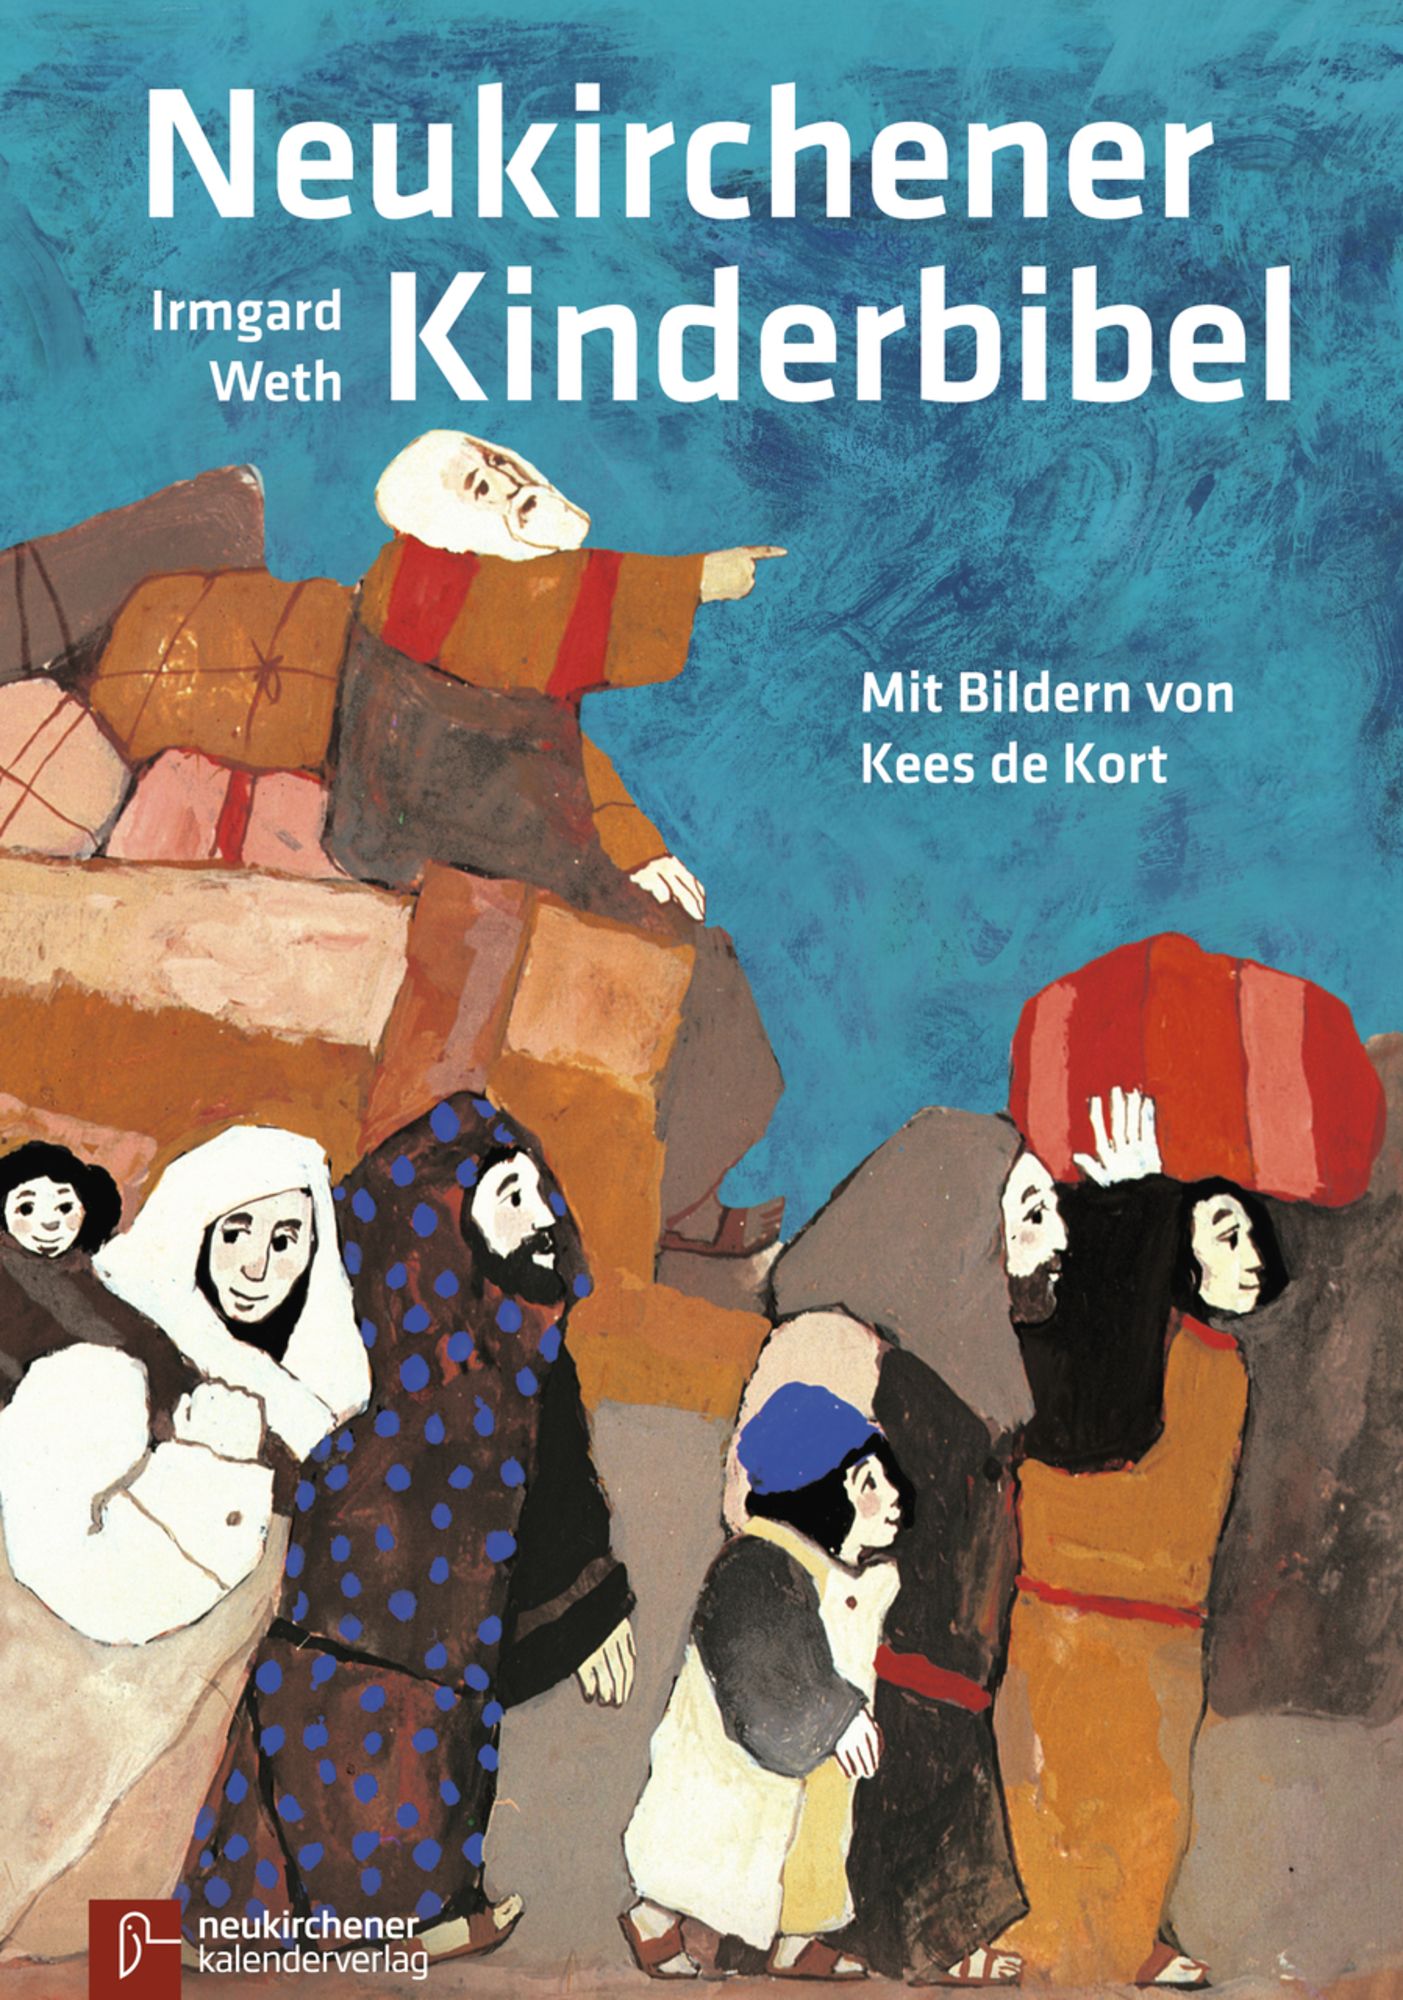 'Neukirchener Kinderbibel' von 'Irmgard Weth' - Buch - '978-3-920524-52-8'